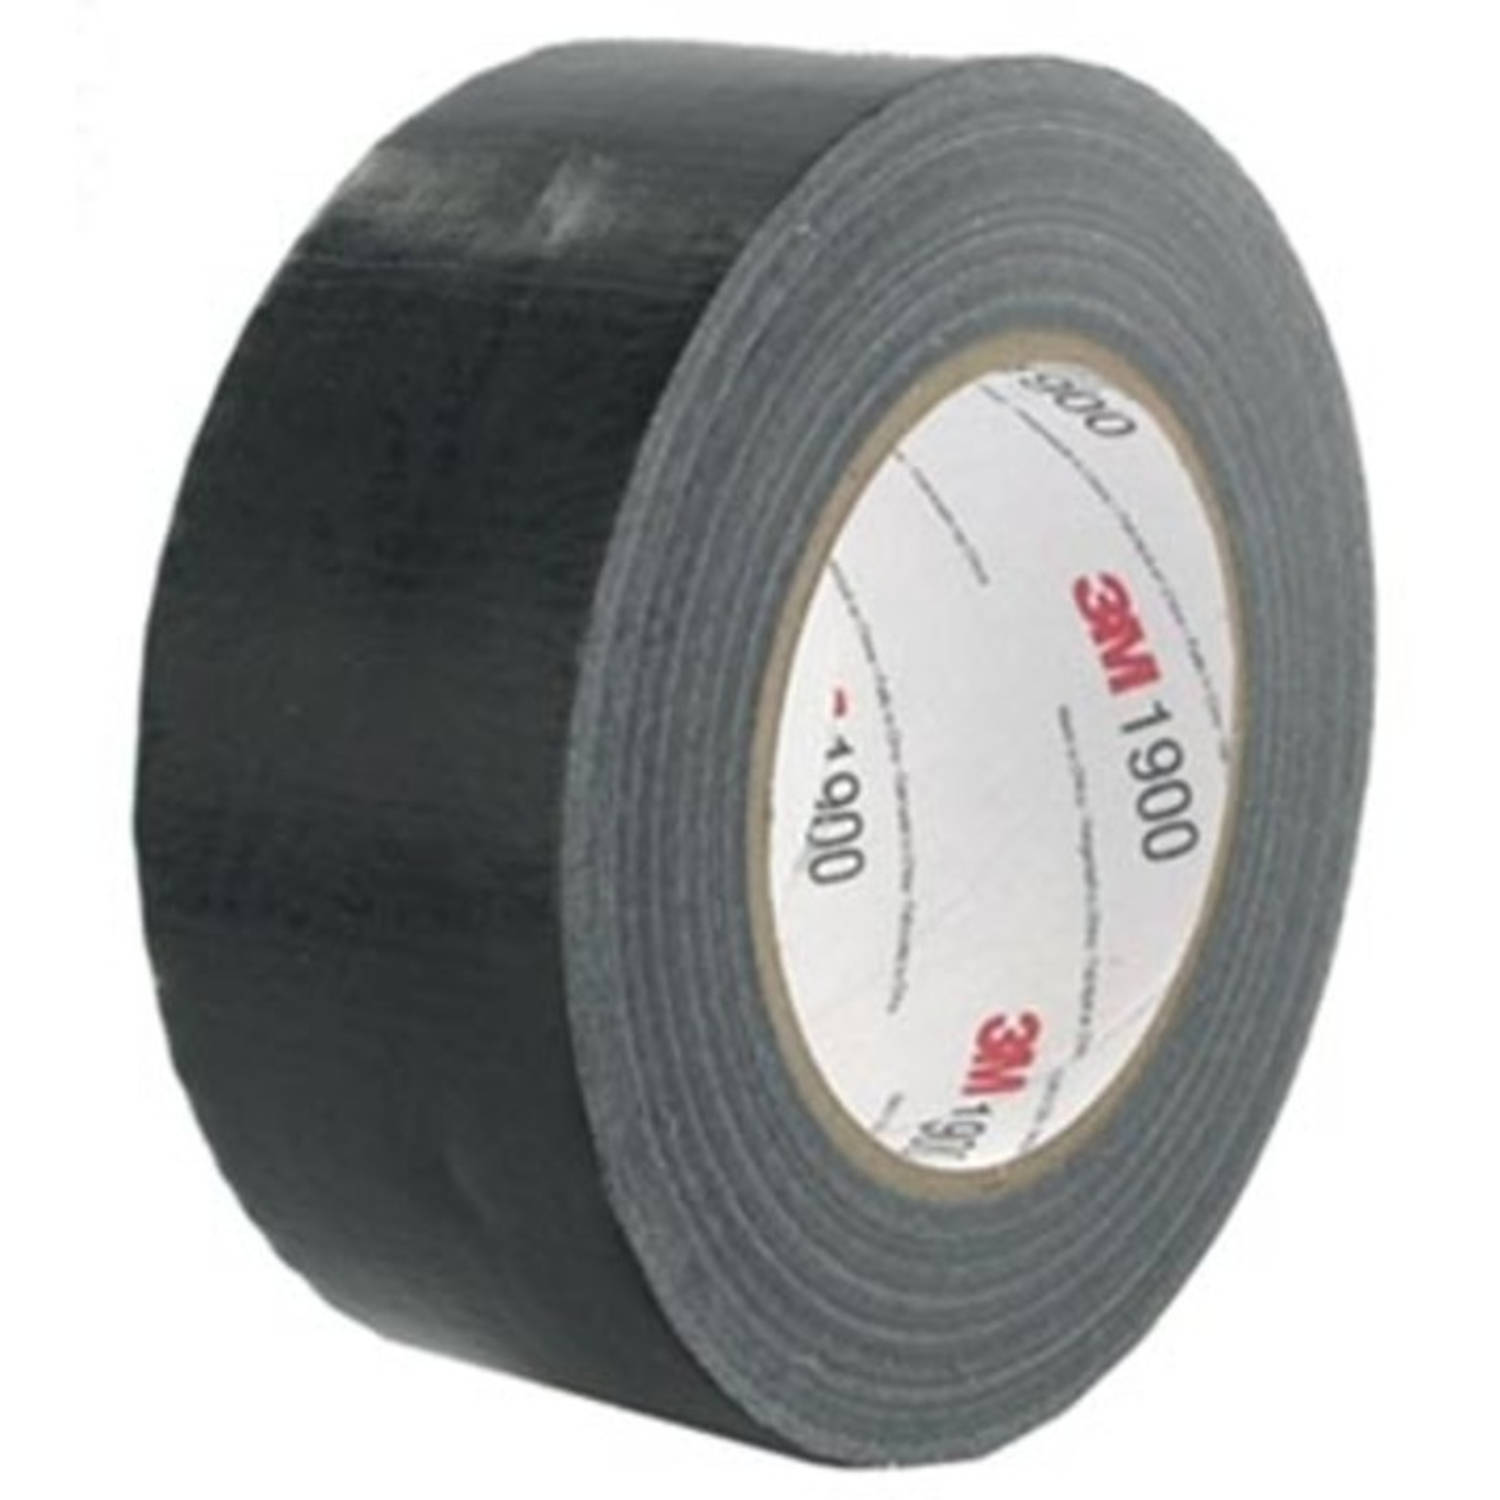 Bengelen Masaccio Voeding 3M duct tape 1900, ft 50 mm x 50 m, zwart | Blokker